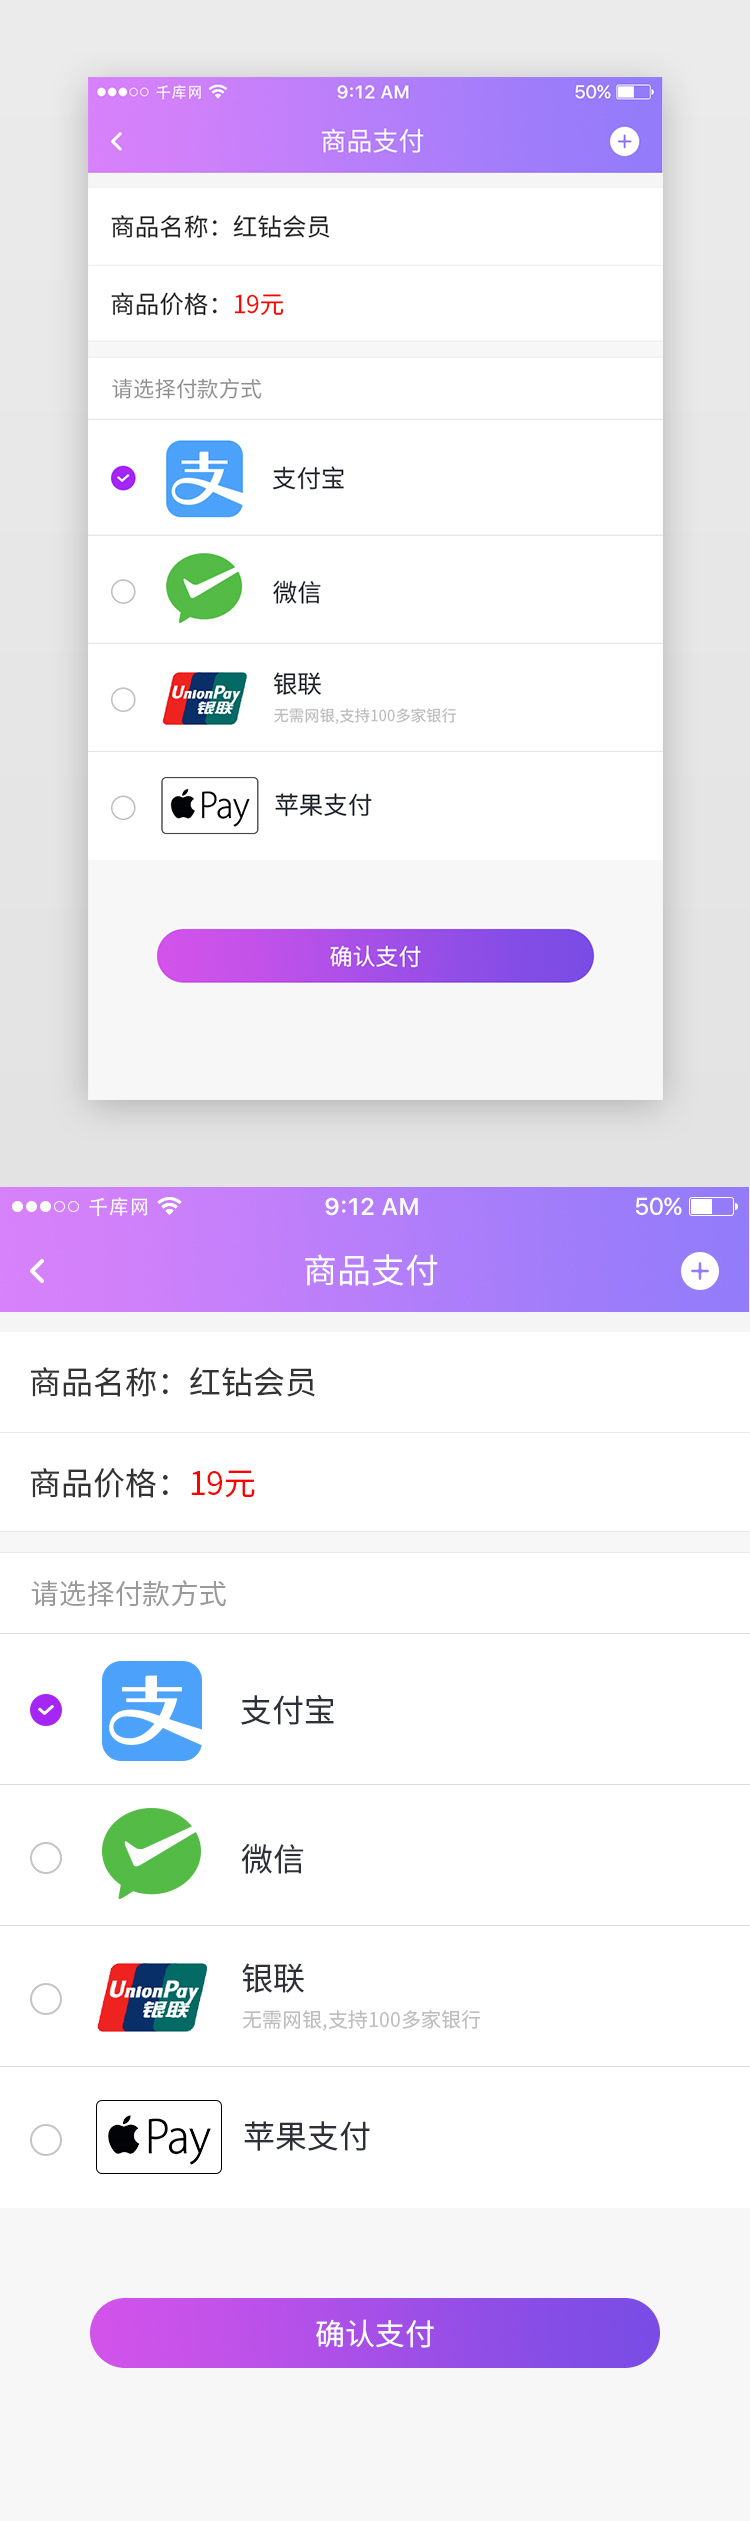 紫色婚恋交友App支付页图片